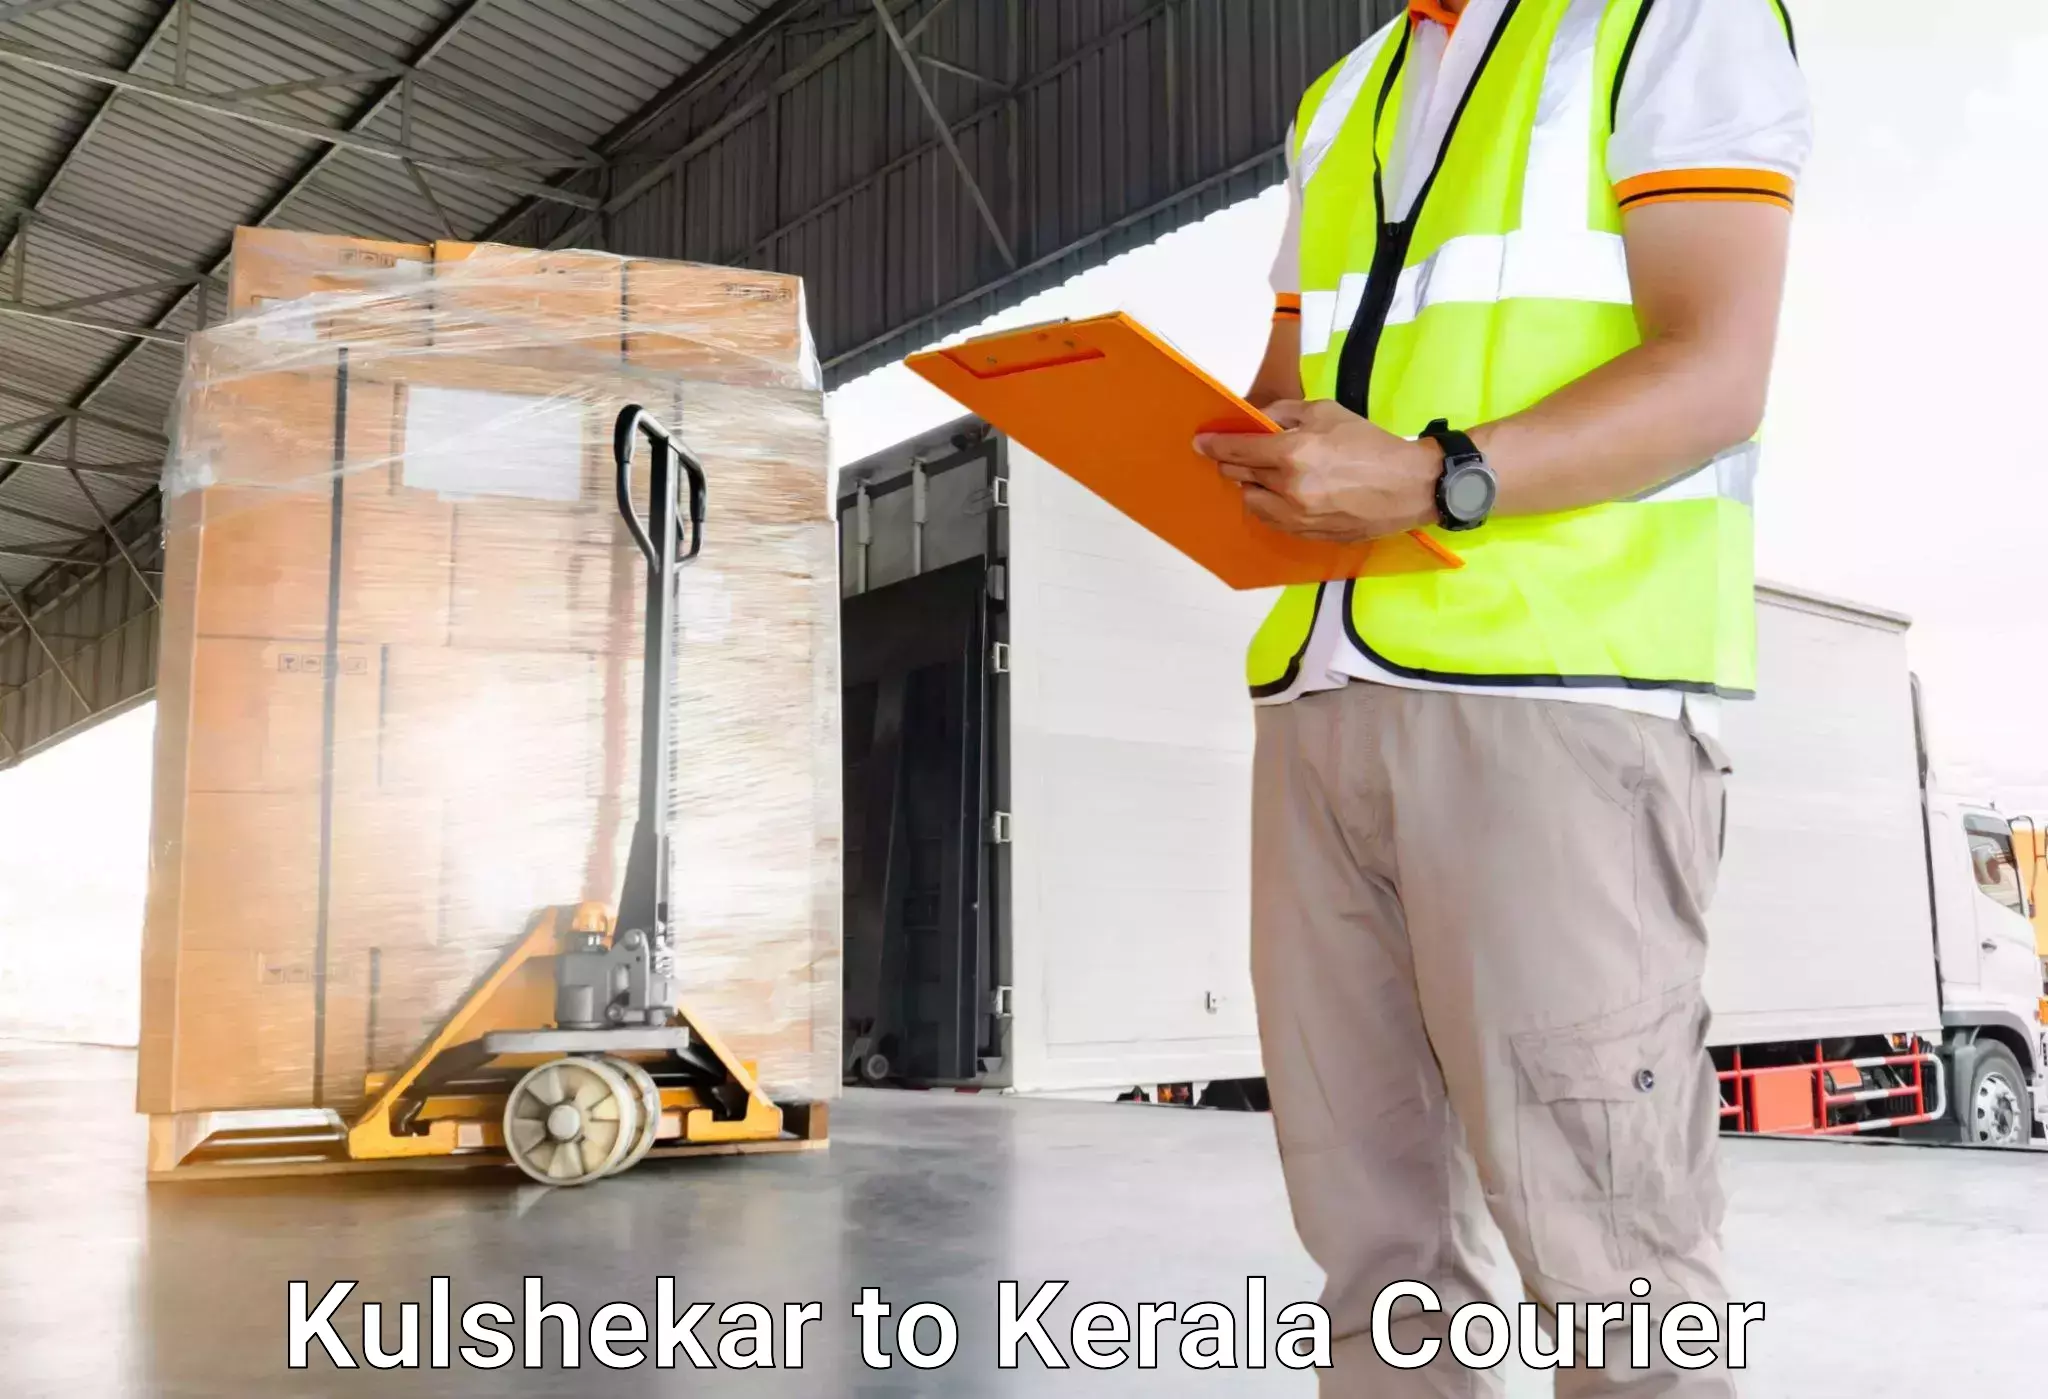 Luggage transport solutions Kulshekar to Aluva